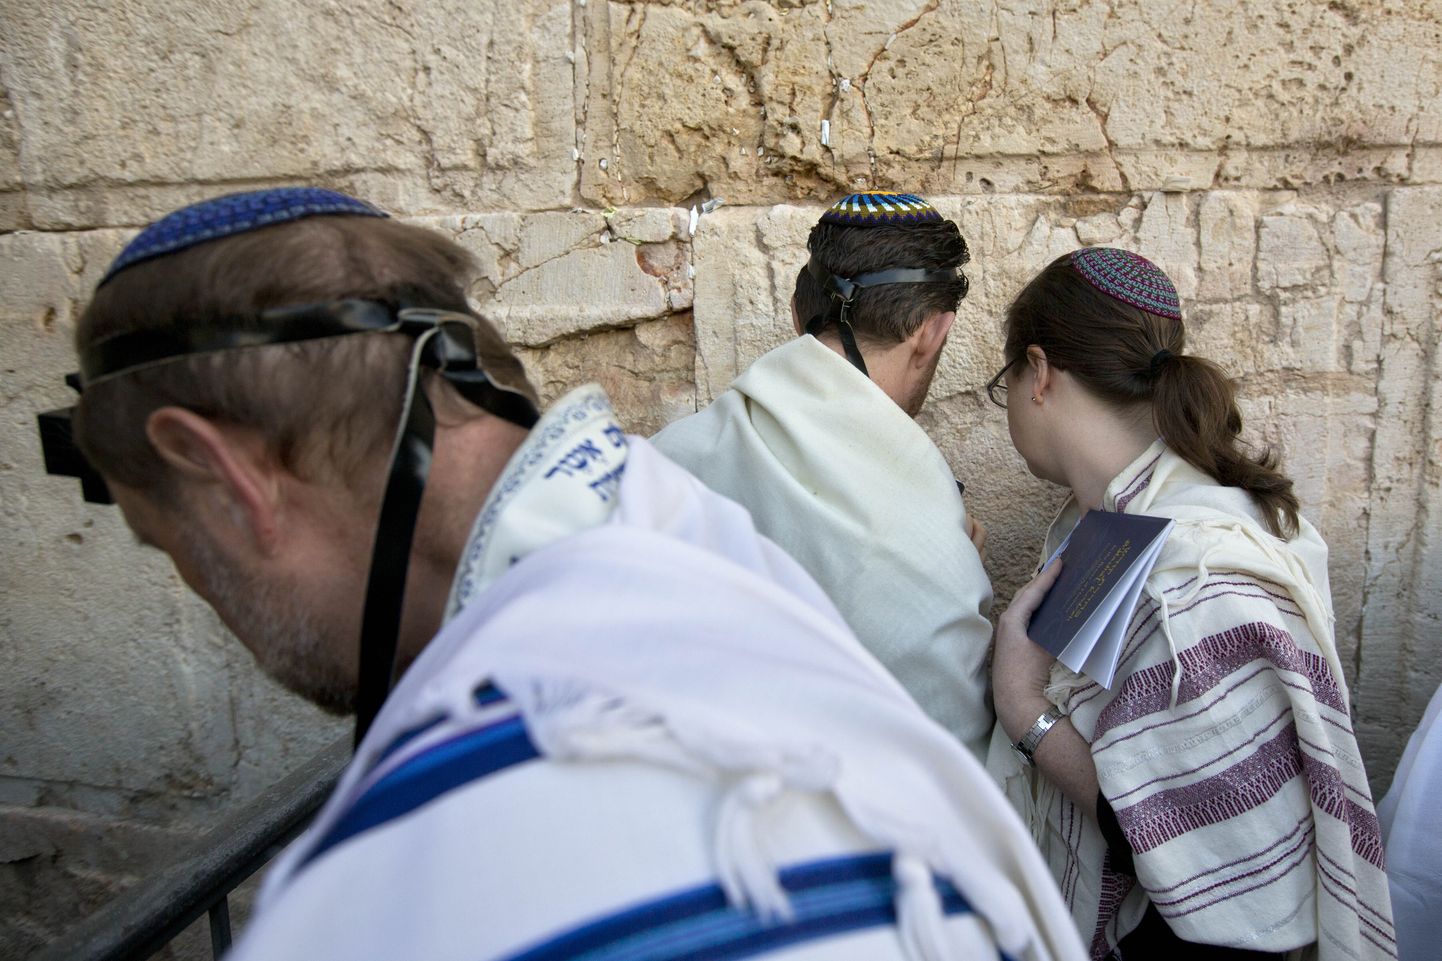 Ameerika ja Iisraeli reformeeritud judaismi rabid palvetamas Nutumüüri ääres. Reformiliikumine lubab ka naistel kipat kanda. Ortodoksia reegelite järgi on Nutumüüri ääres naised ja mehed eraldatud ning naised pigimütsi ei kanna.